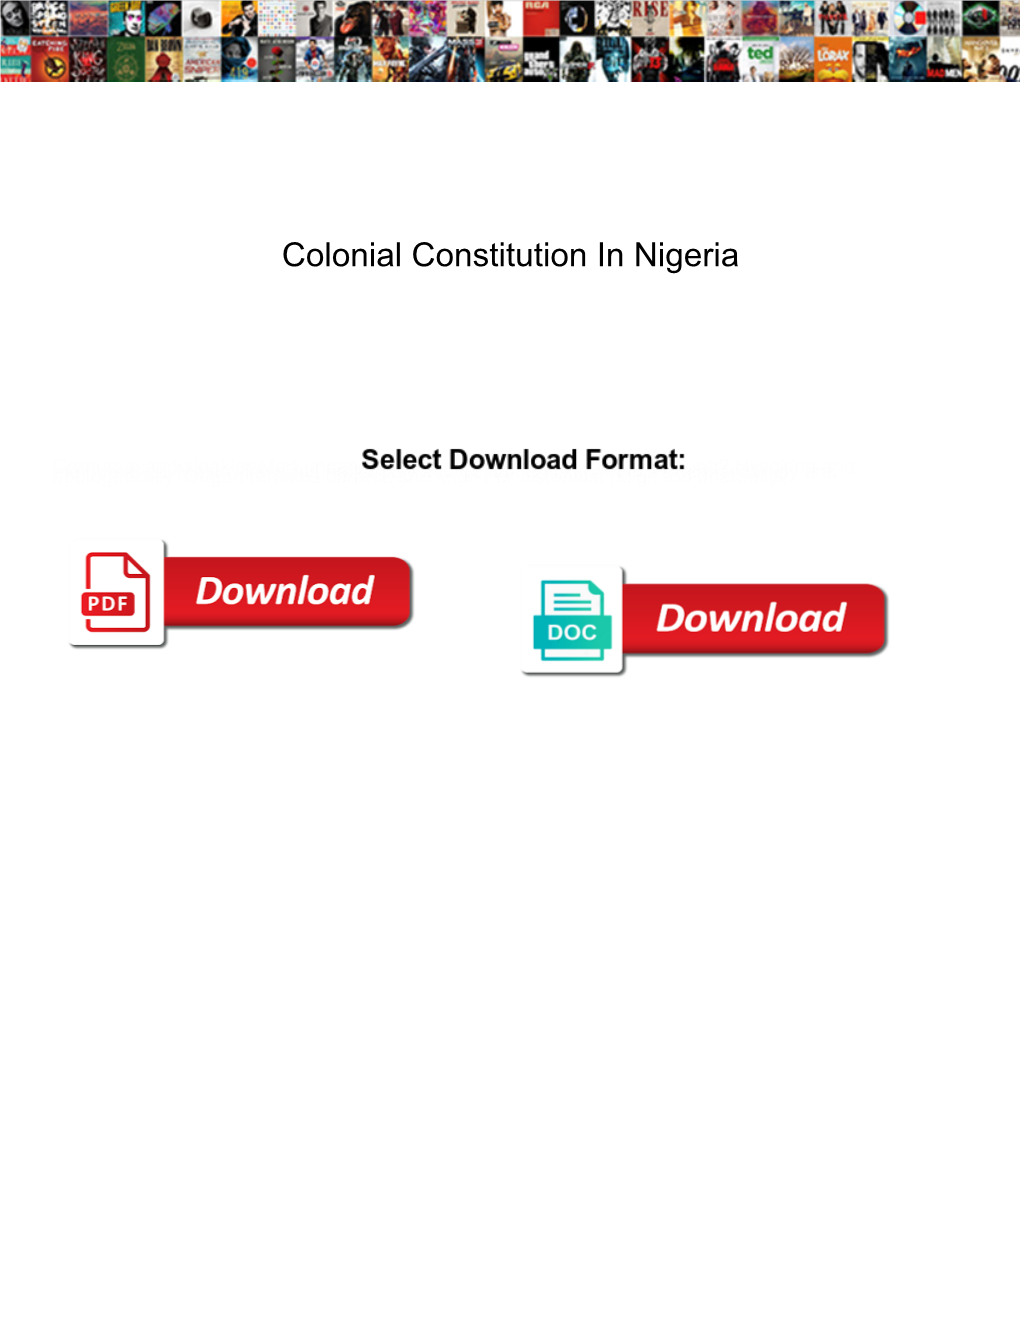 Colonial Constitution in Nigeria